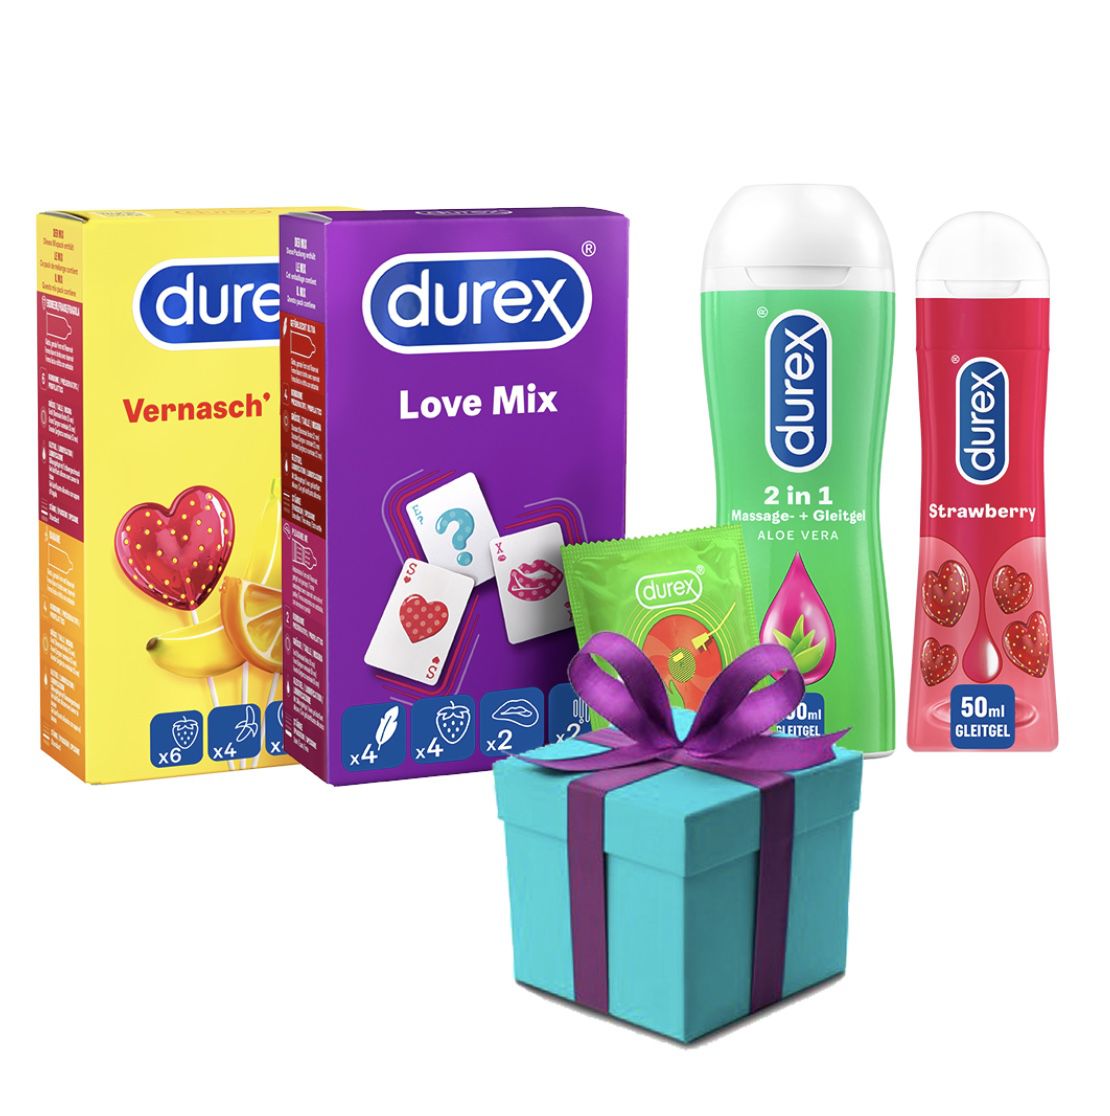 Durex Love-Set zum Valentinstag mit erotischer Überraschung für 26,39€ (statt 30€)